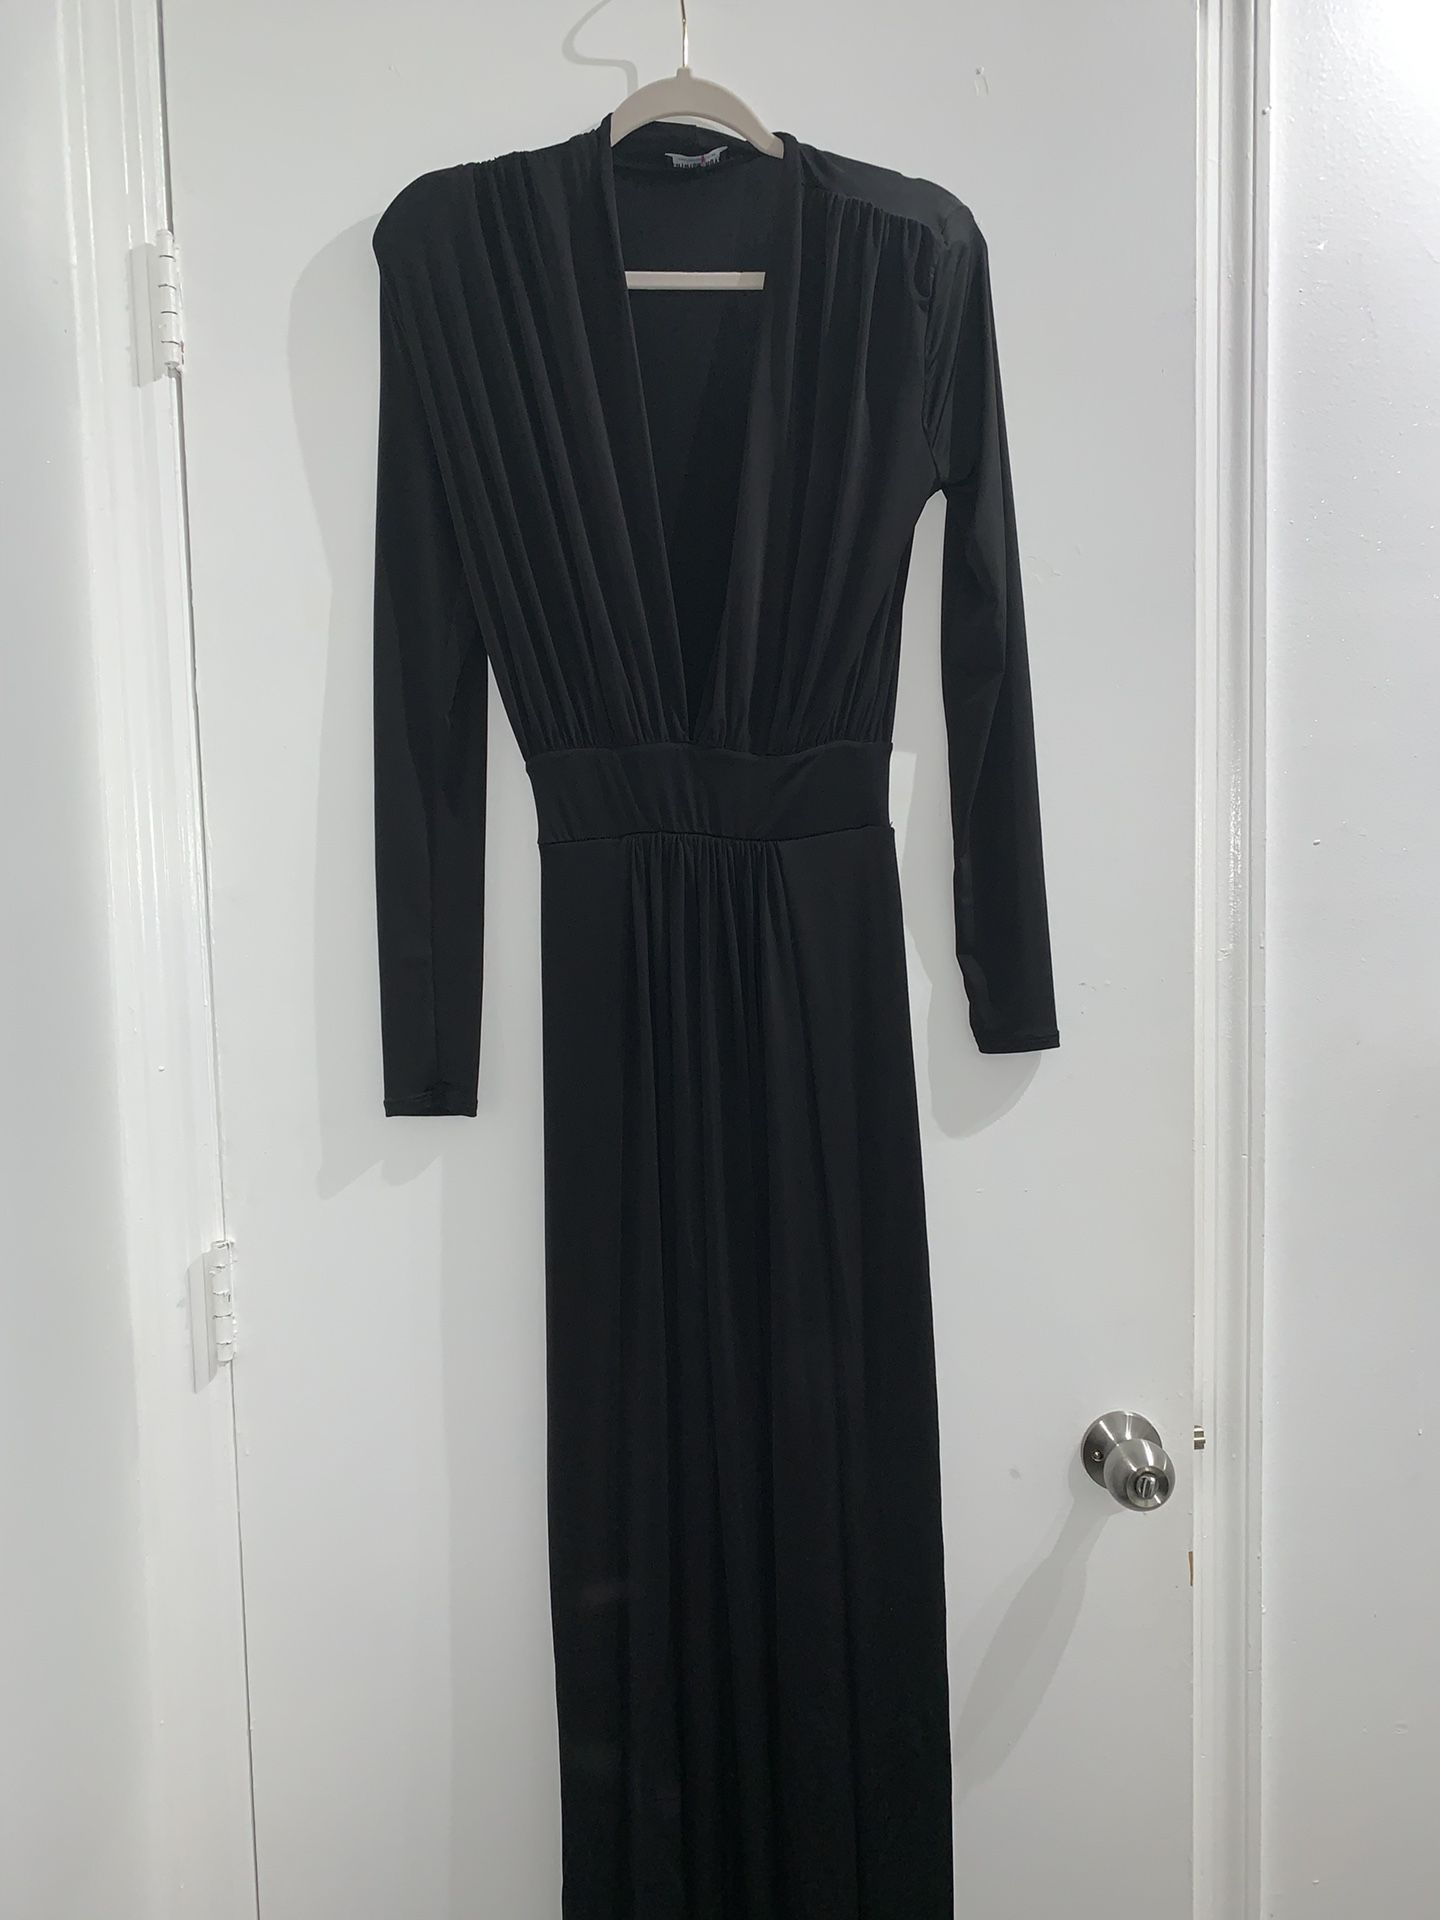 Black Maxi/ Prom Dress